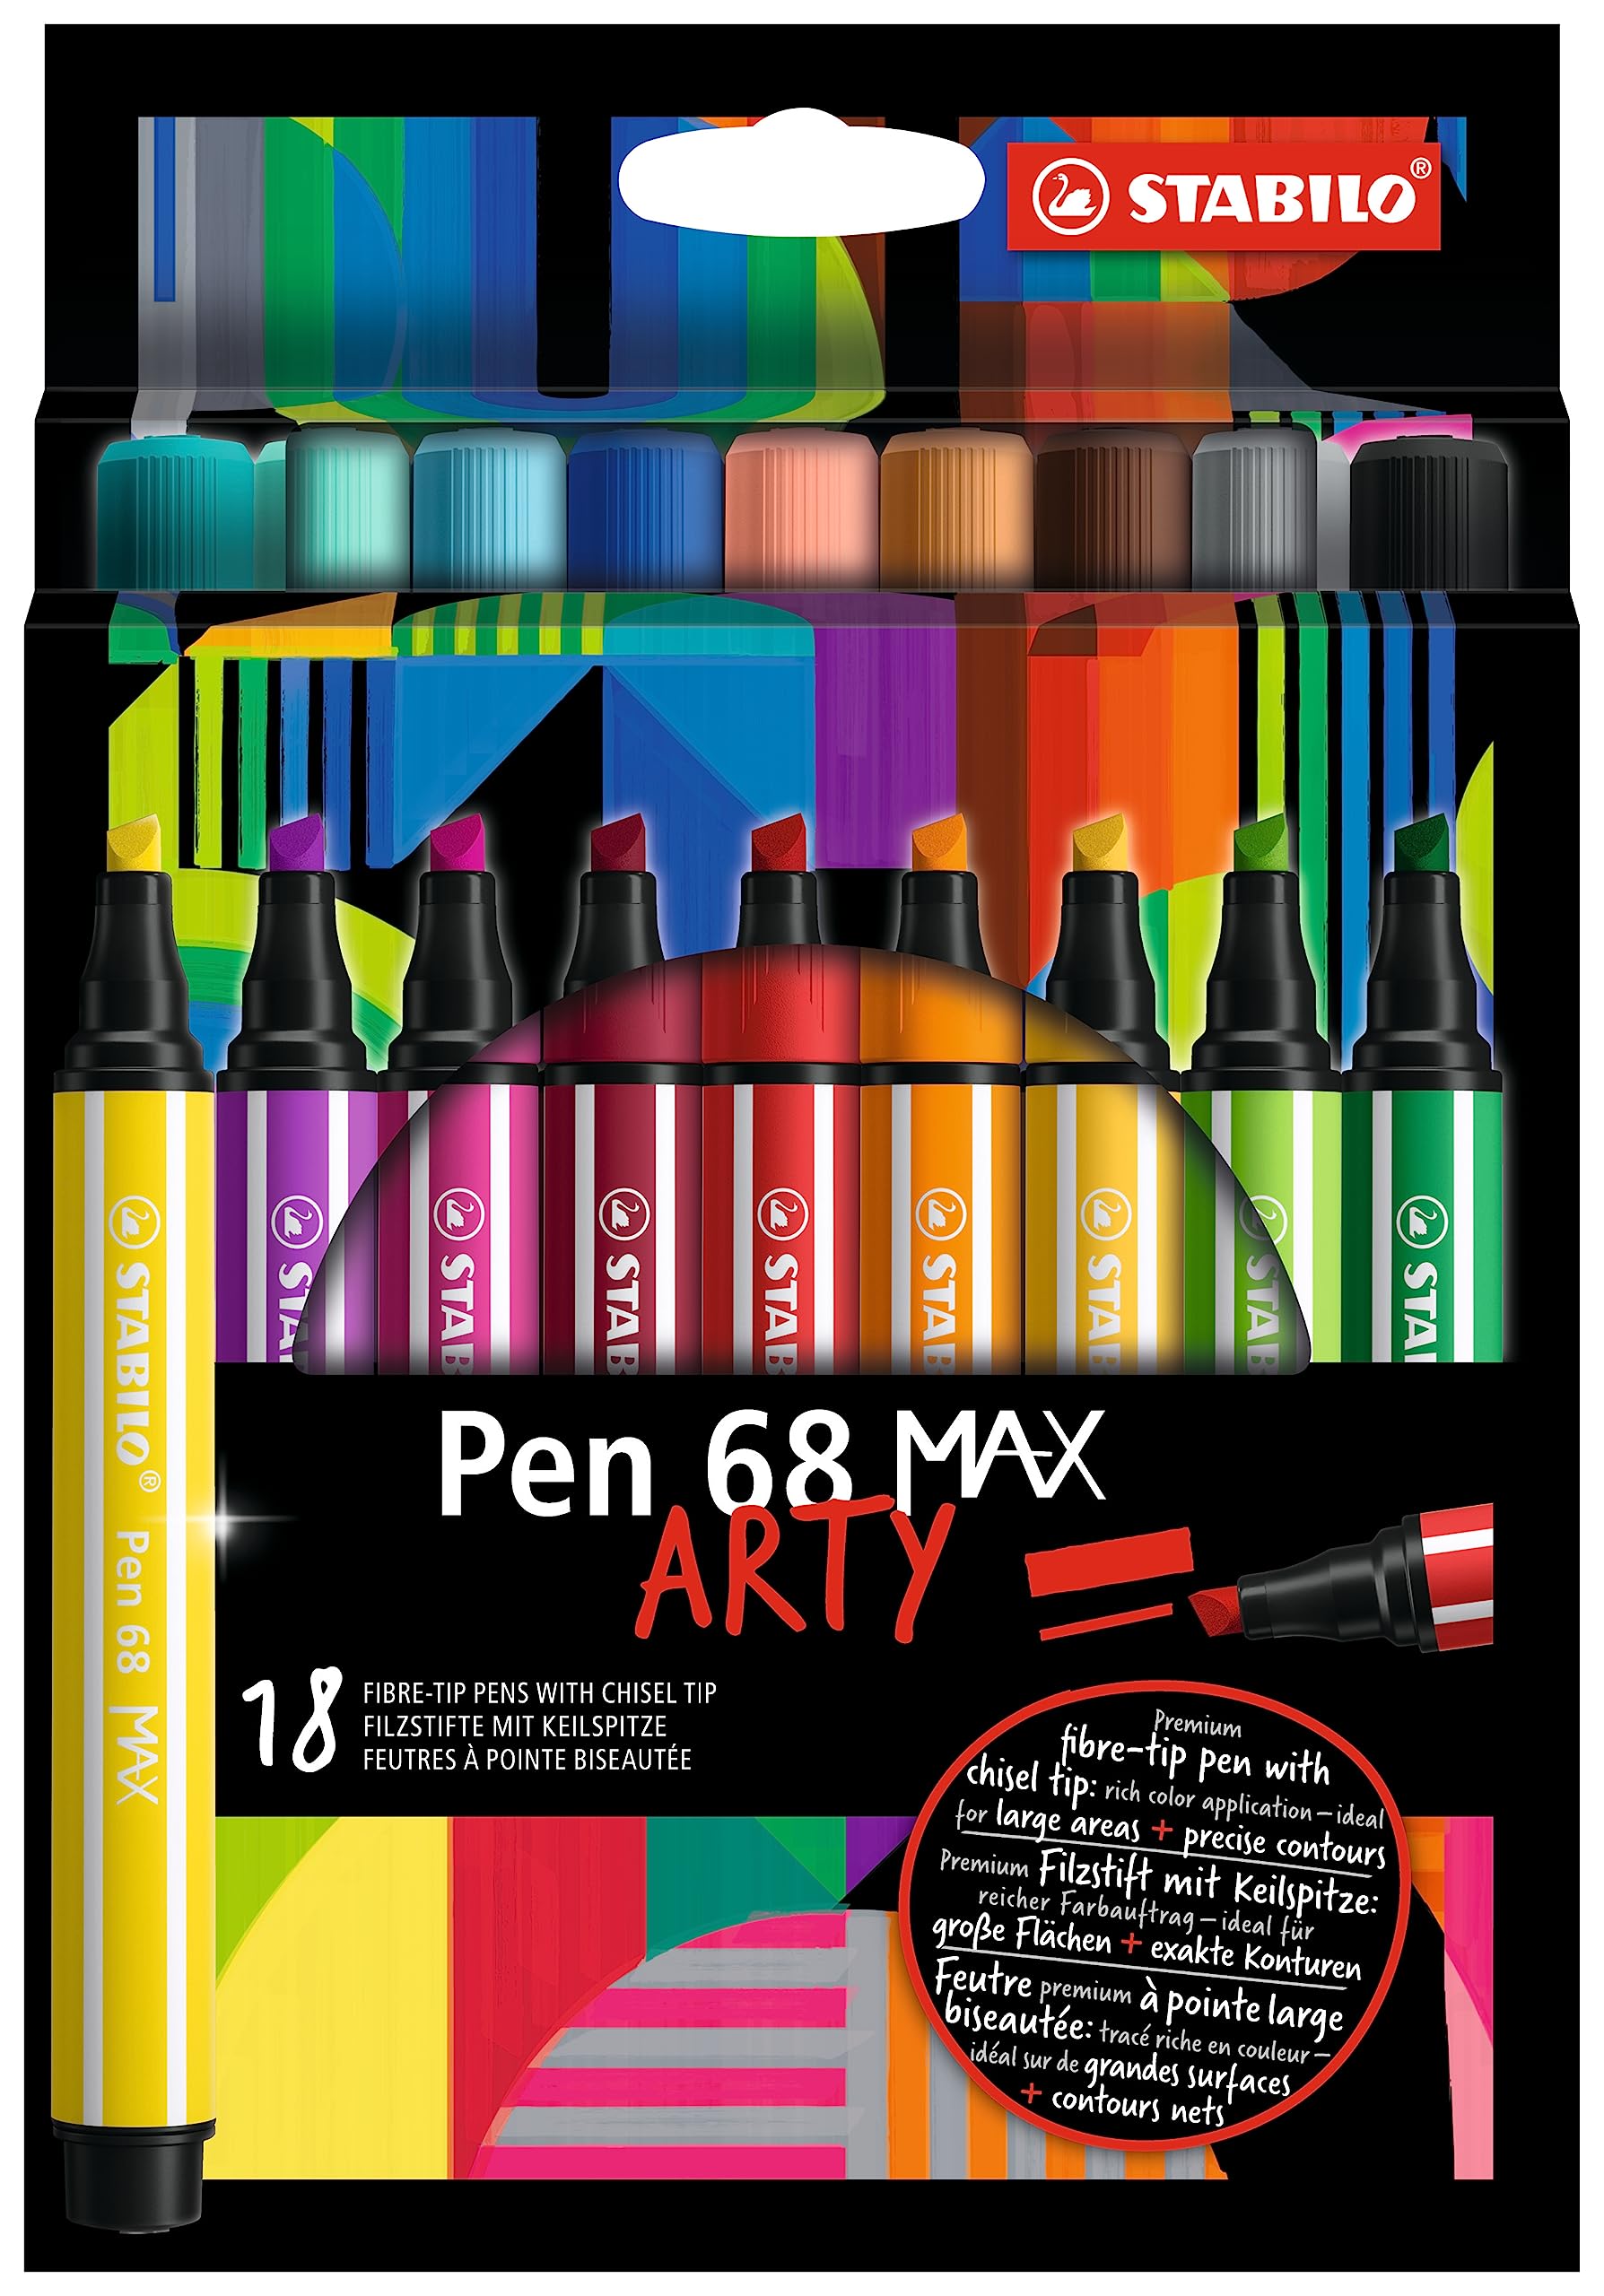 Astuccio cartone Stabilo arty Pen 68 Max da 18 colori